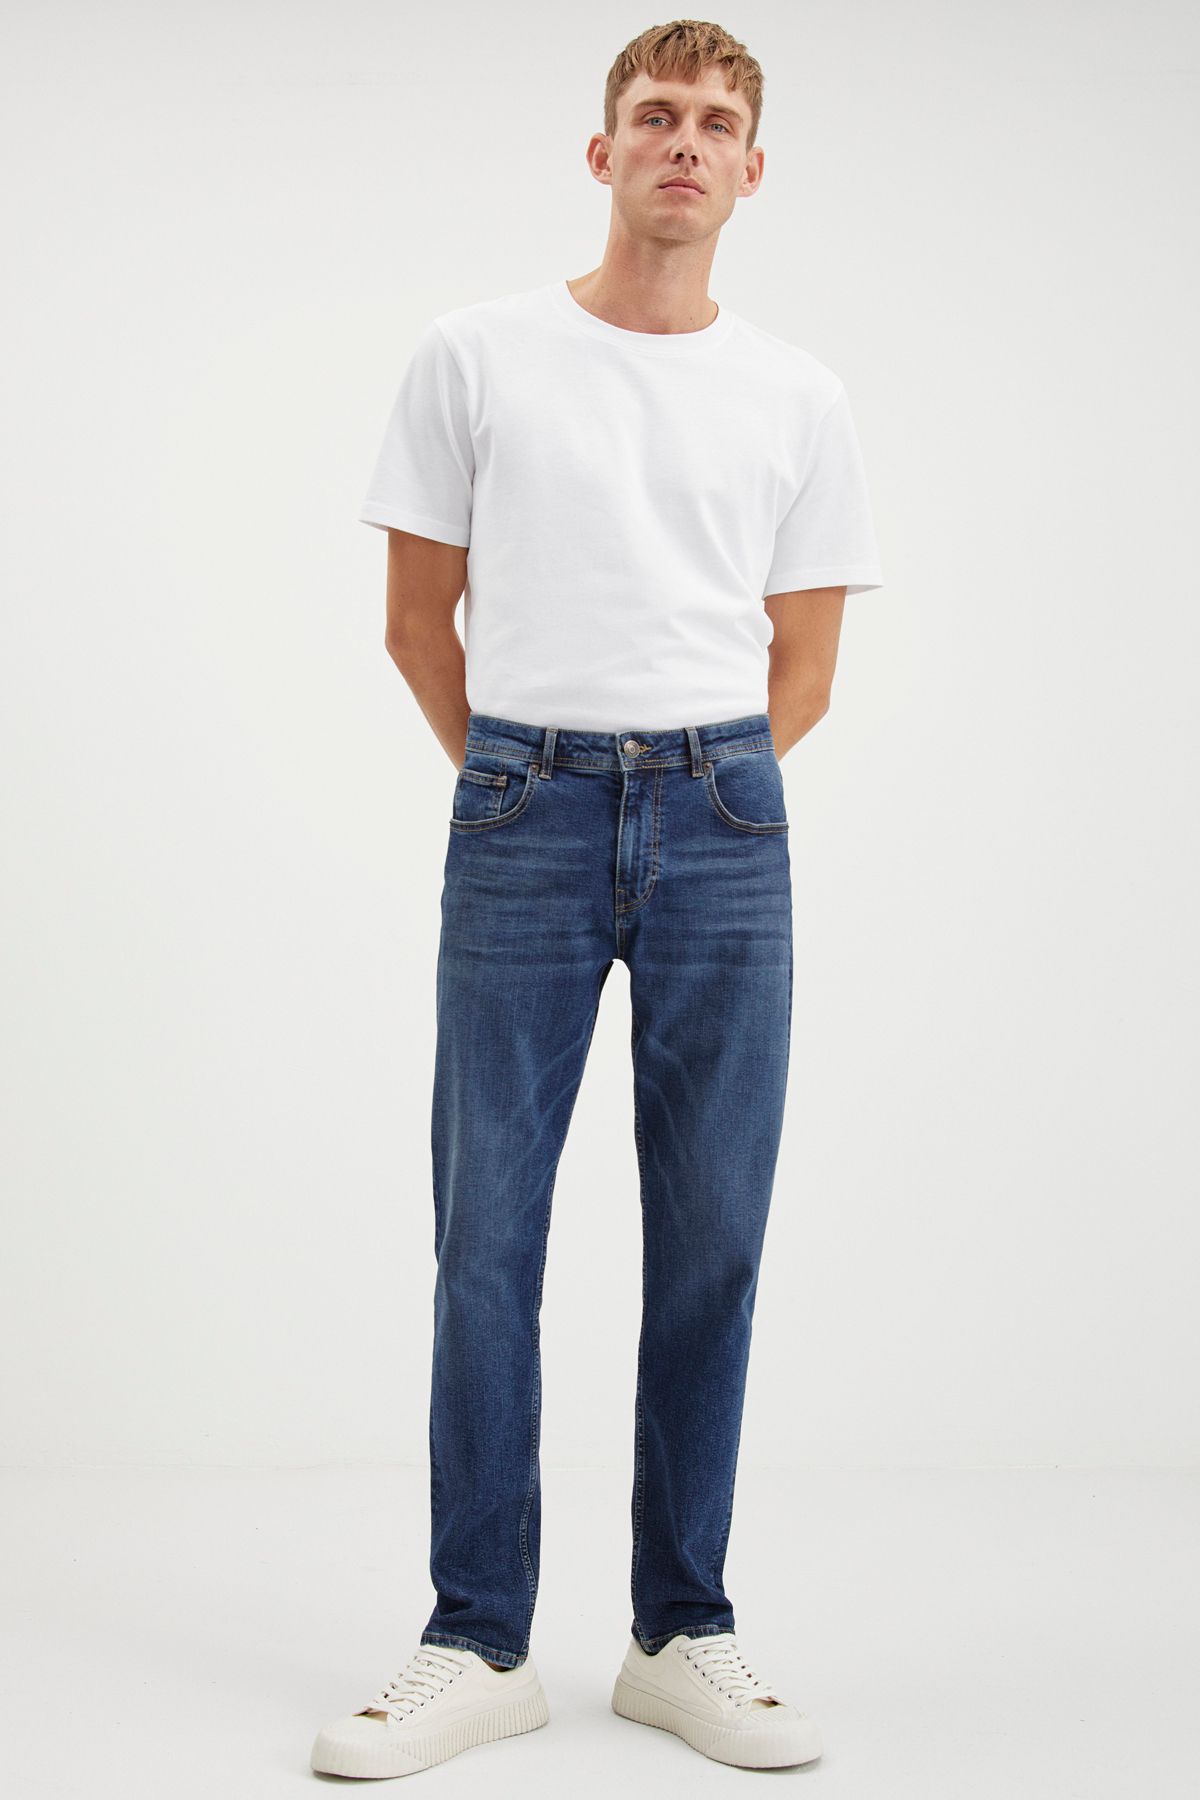 GRIMELANGE Davın Erkek Denim Kalın Dokulu Slim Fit Kalıplı Koyu Mavi Jeans